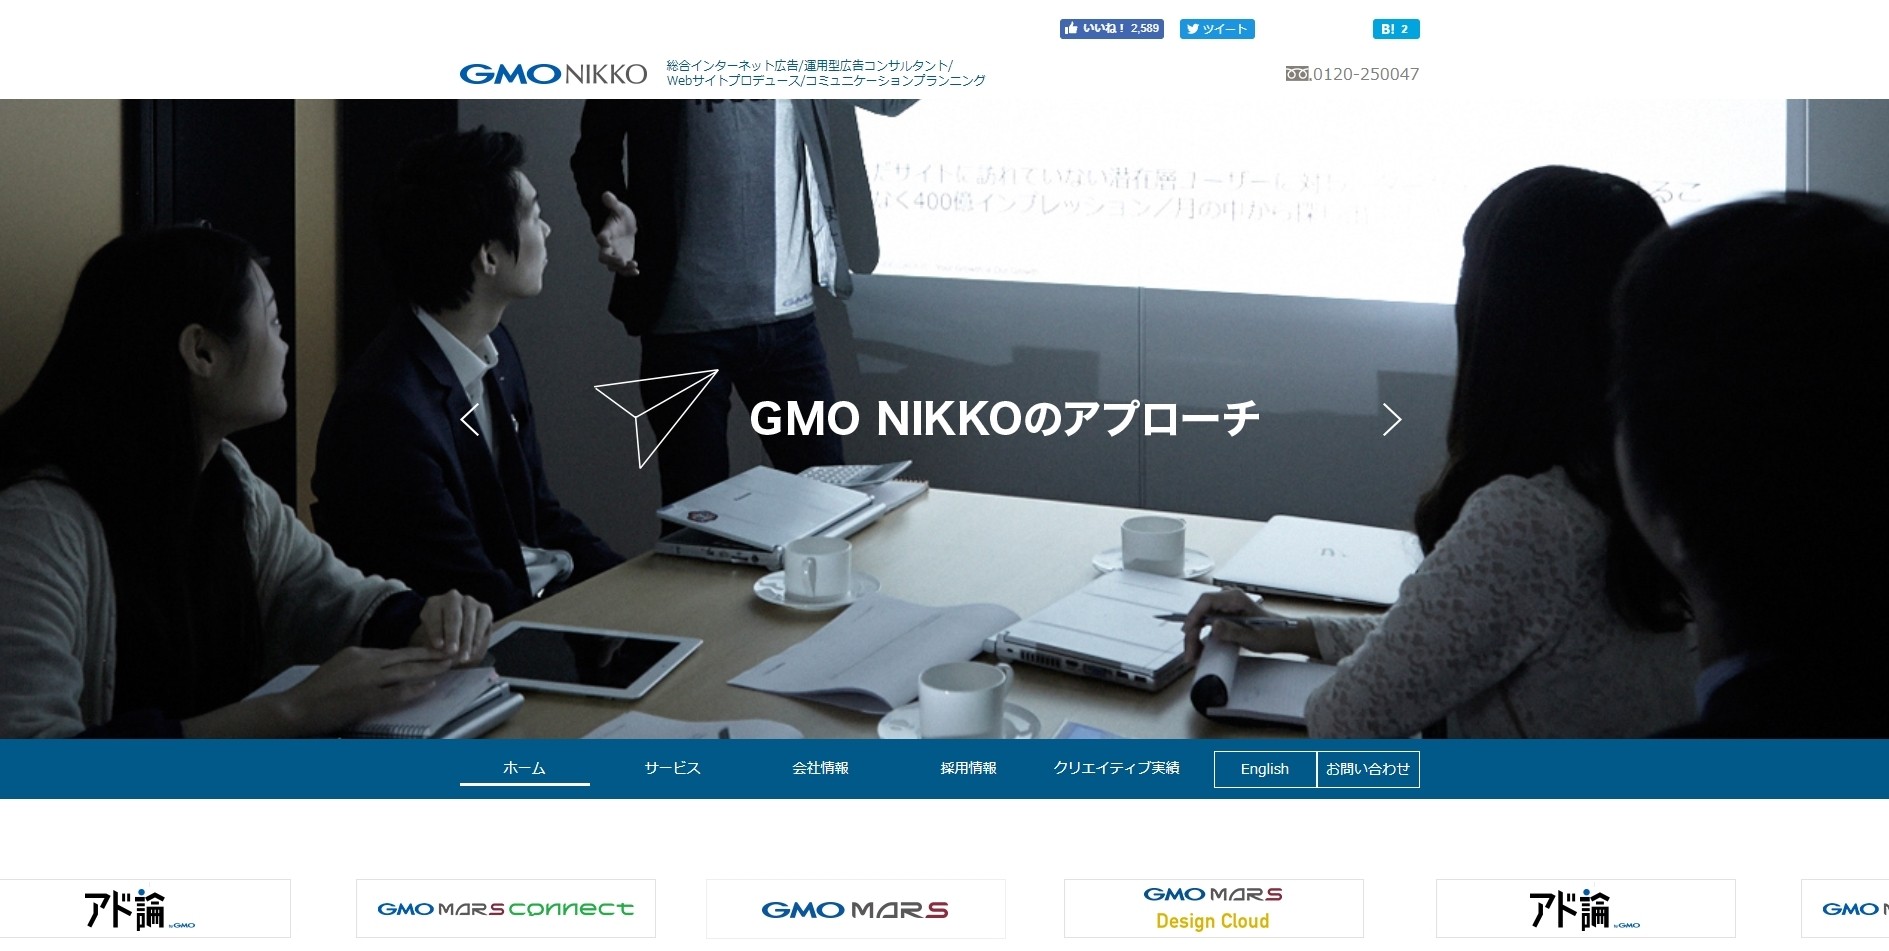 GMO NIKKO株式会社のGMO NIKKO株式会社サービス